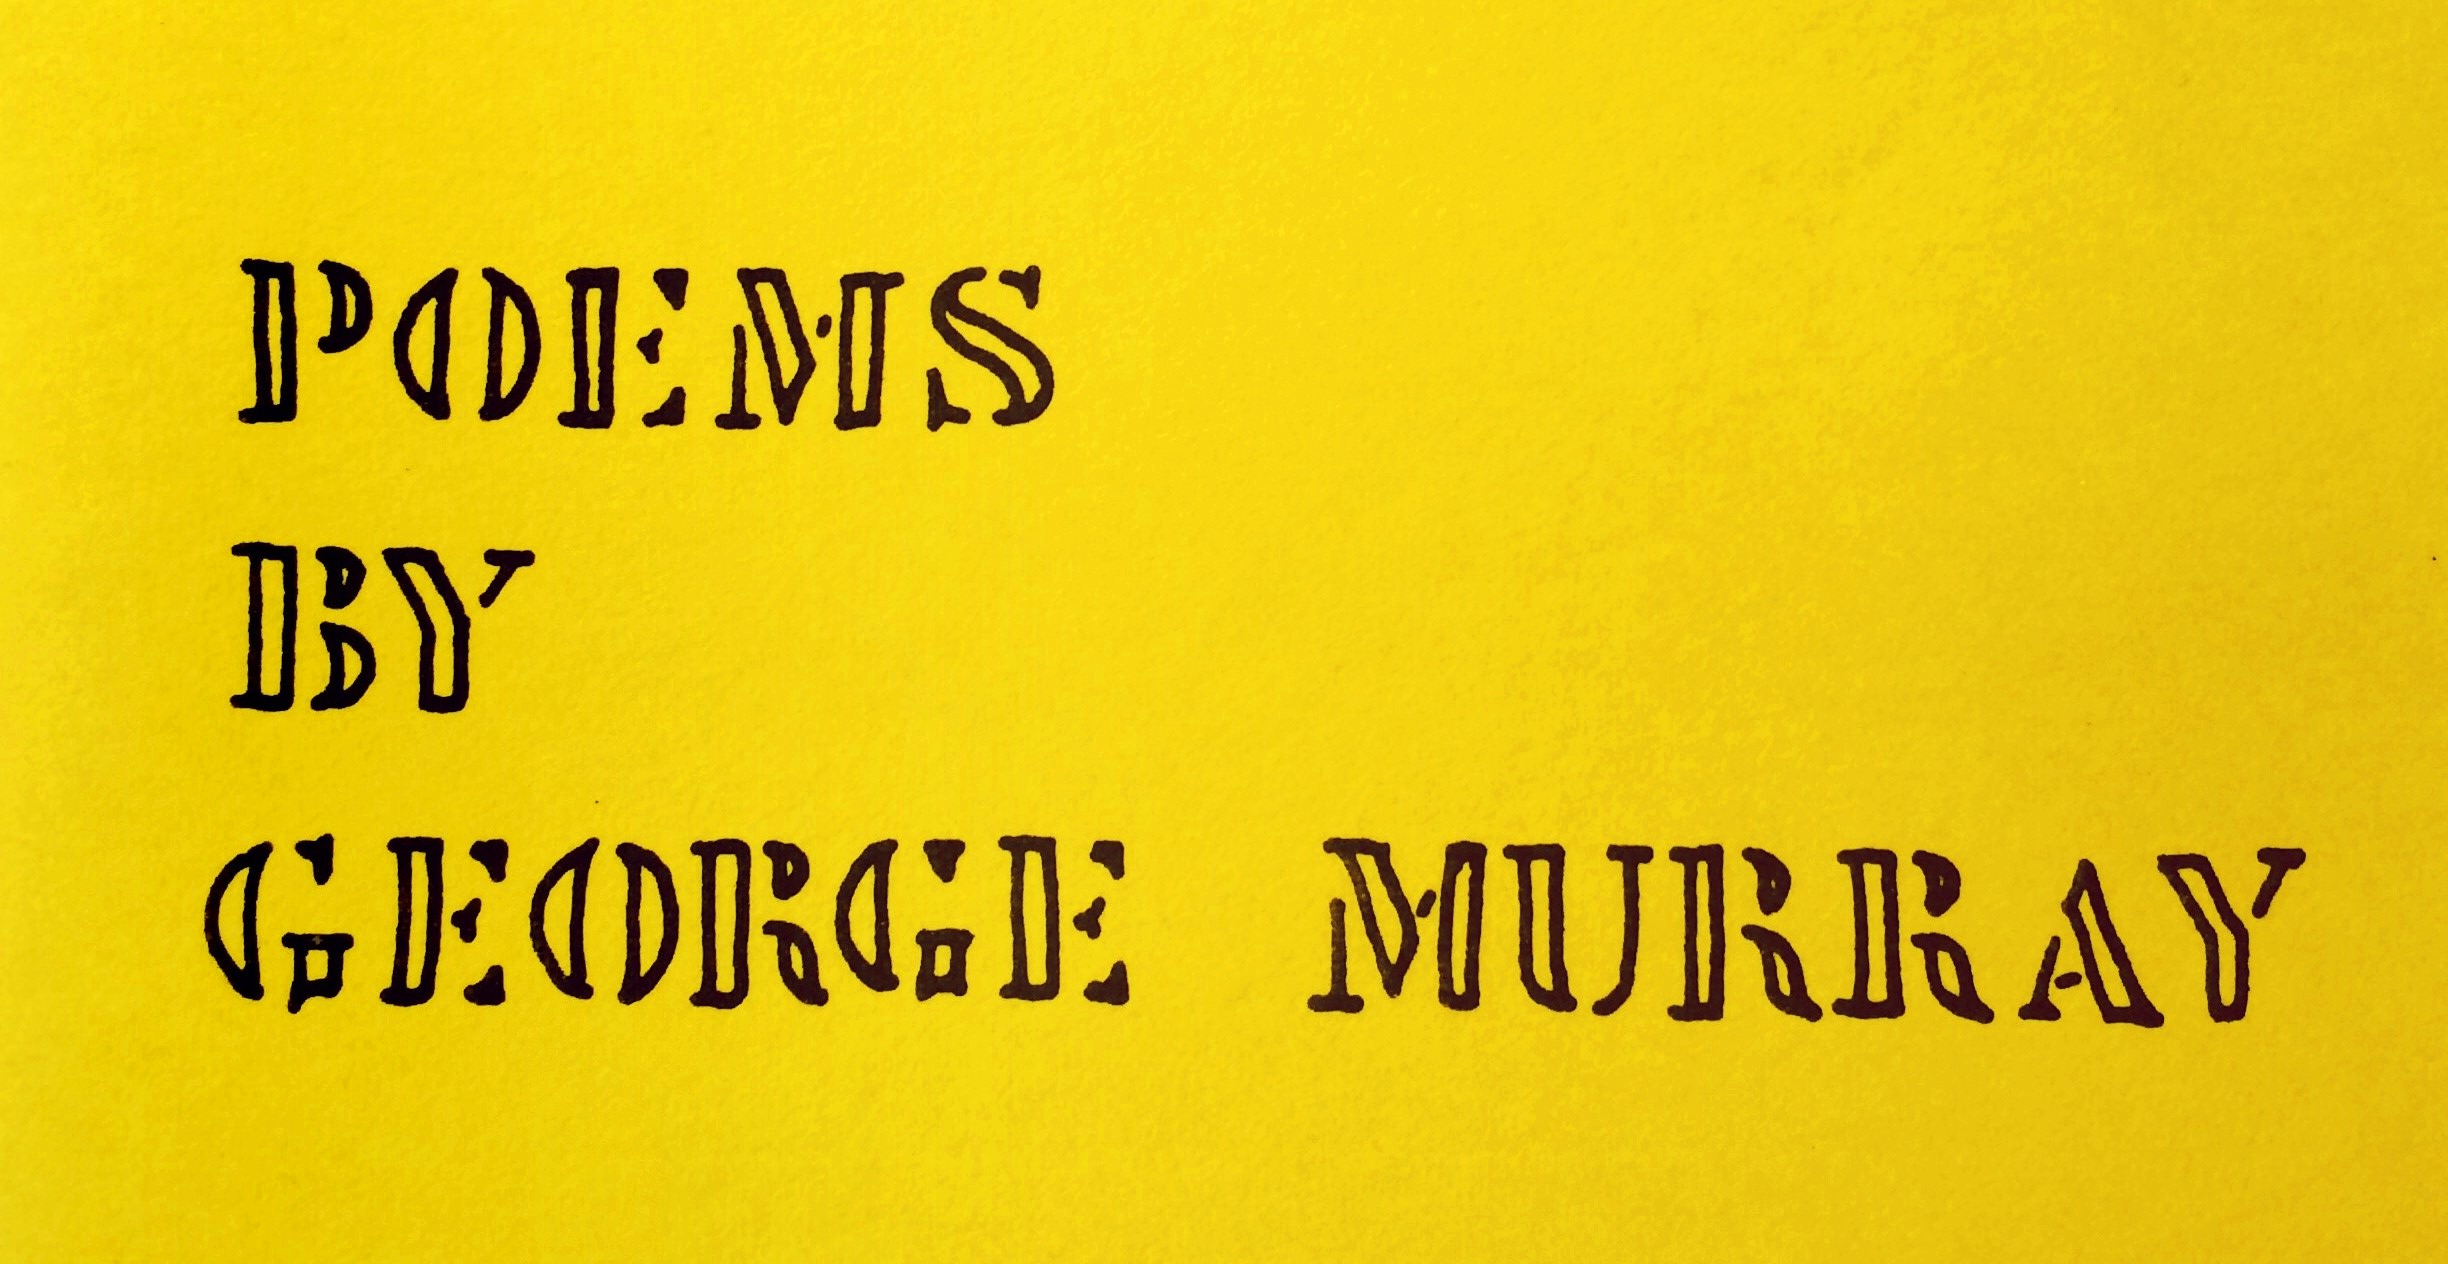 Poems by George Murray, Poet